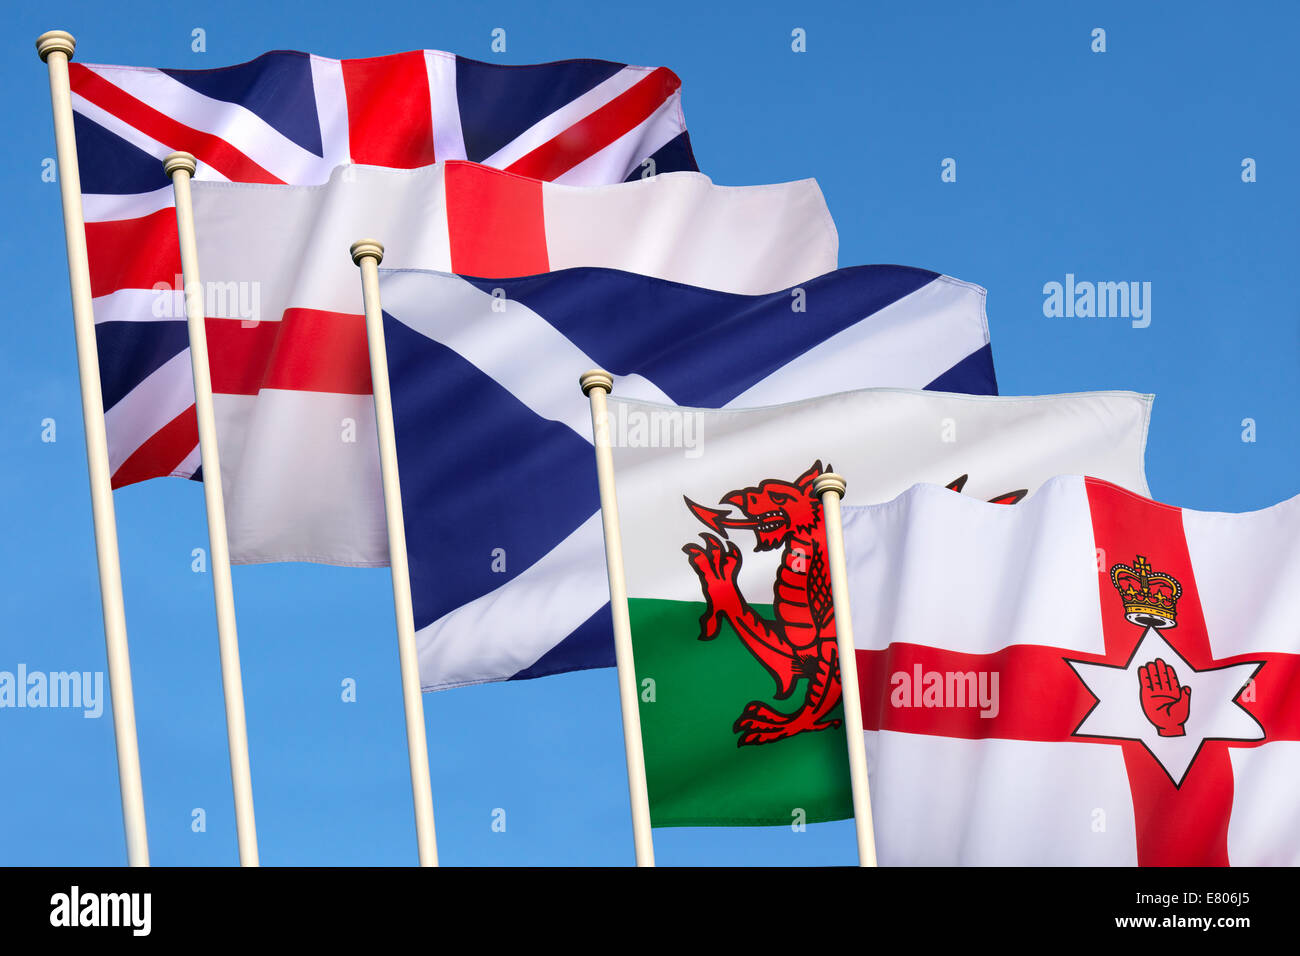 Bandiere del Regno Unito di Gran Bretagna - Inghilterra, Scozia, Galles, Irlanda del Nord e la bandiera europea. Foto Stock